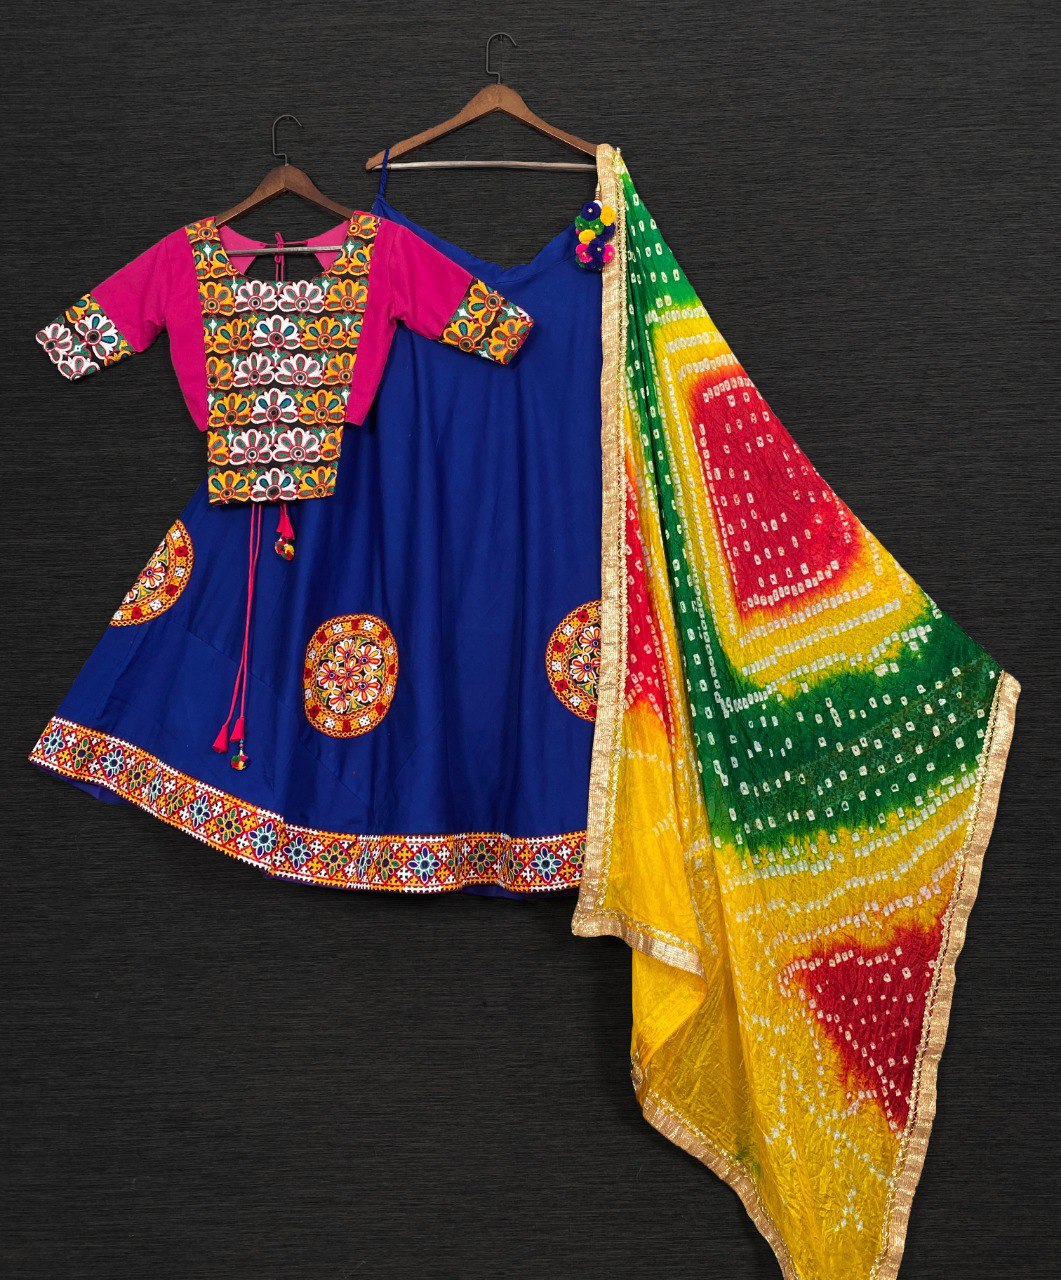 Garba Dress Ideas How To style yourself on Dandiya Garba night without  chaniya choli - Garba Dress Ideas: बिना चनिया चोली पहने डांडिया-गरबा नाइट  पर खुद को यूं करें स्टाइल, देखते रह